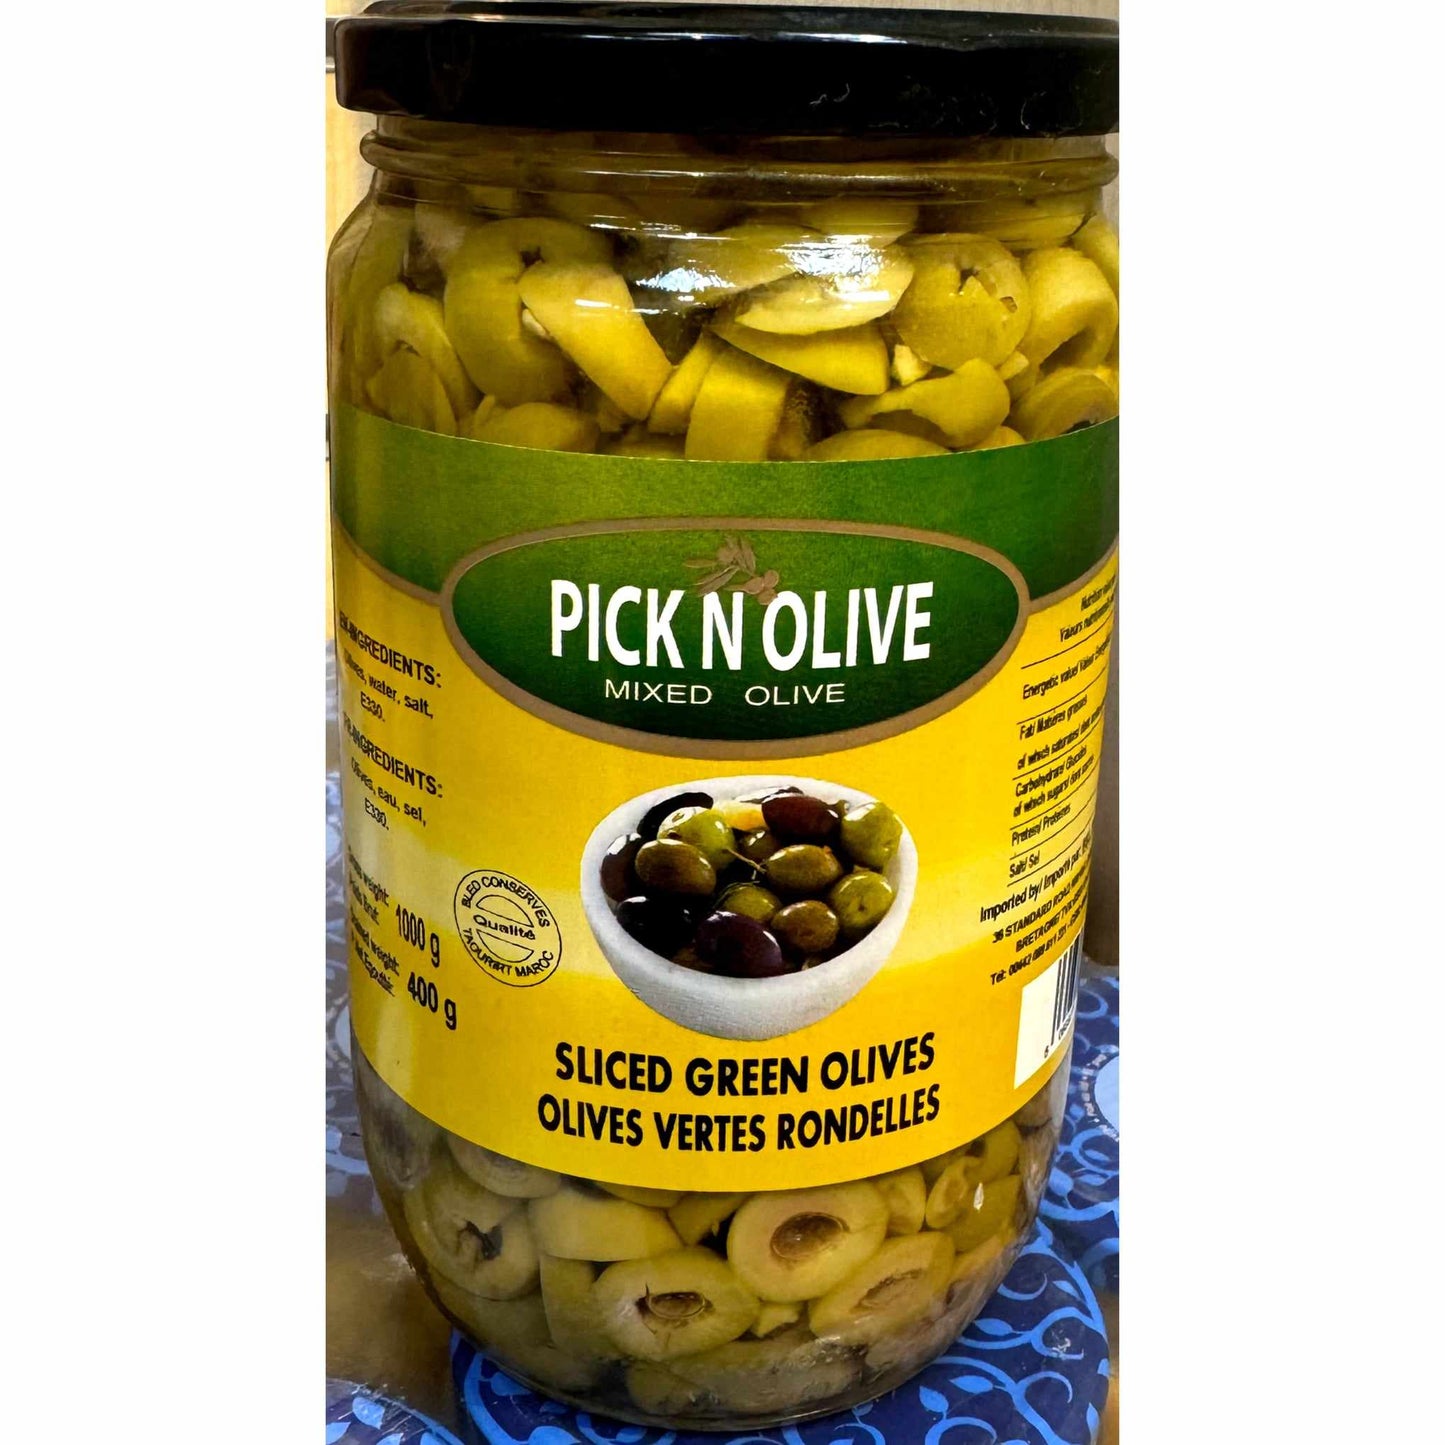 Pick n olive sliced green olives 400g